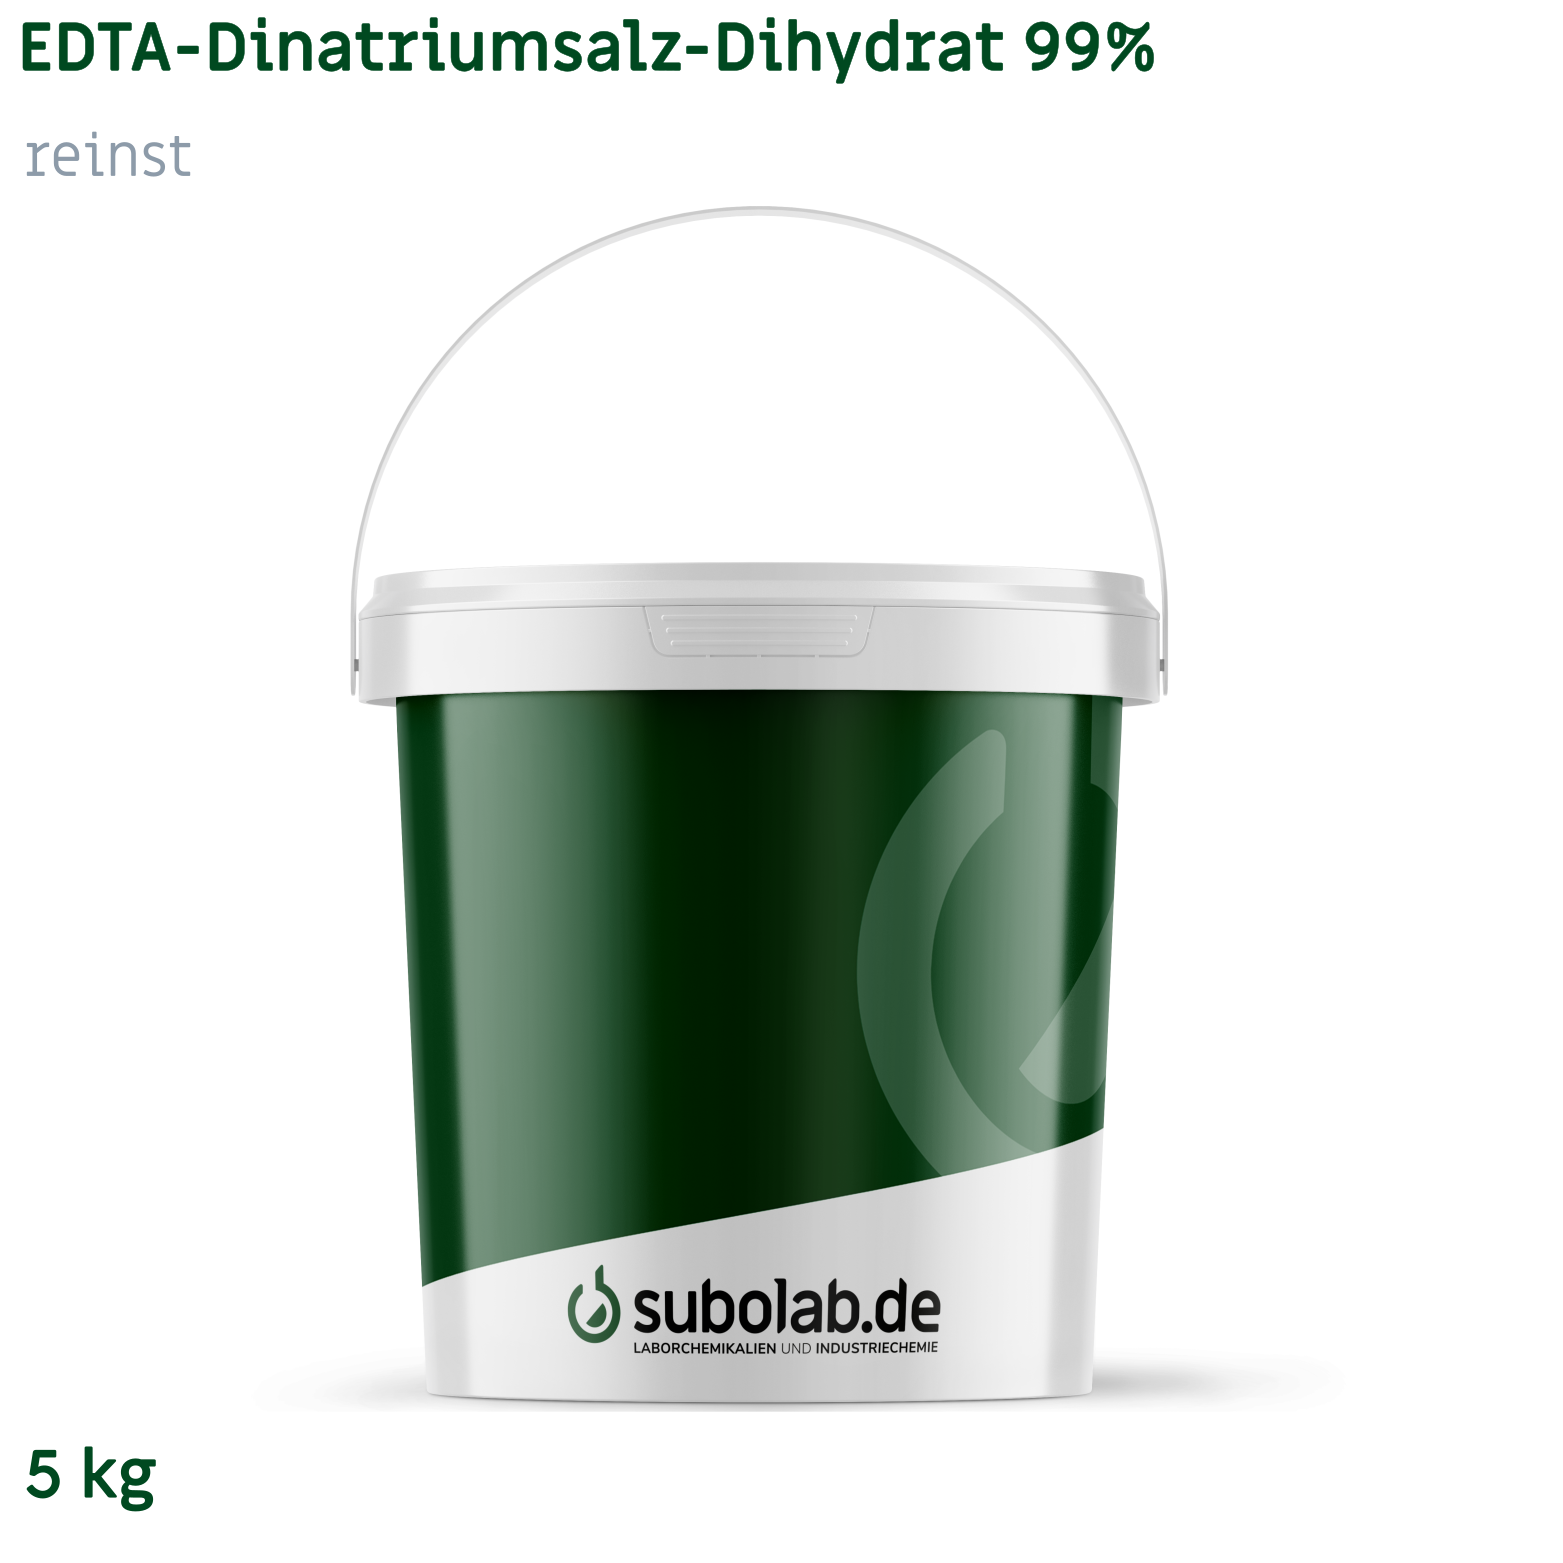 Bild von EDTA - Dinatriumsalz - Dihydrat 99% reinst (5 kg)